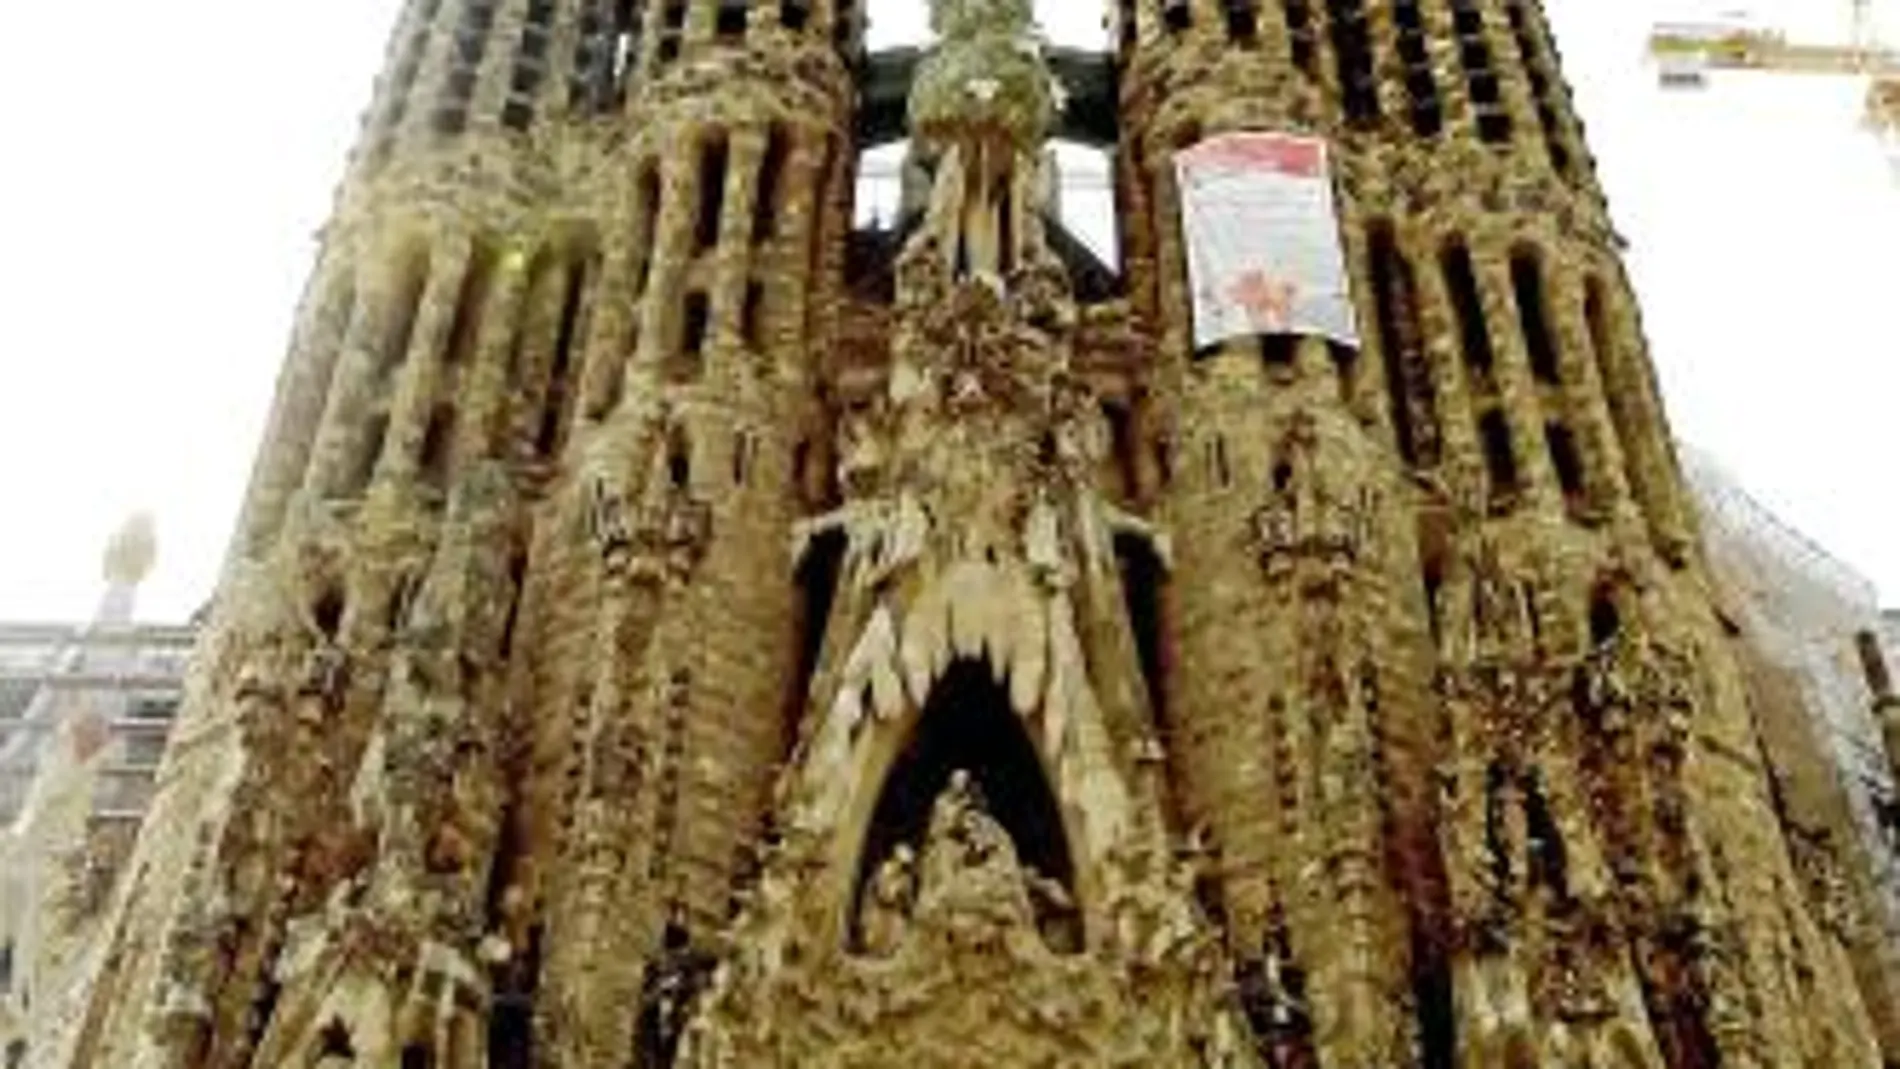 La Sagrada Familia fue el proyecto último de Antoni Gaudí, donde quiso plasmar toda su devoción cristiana y amor por la Iglesia